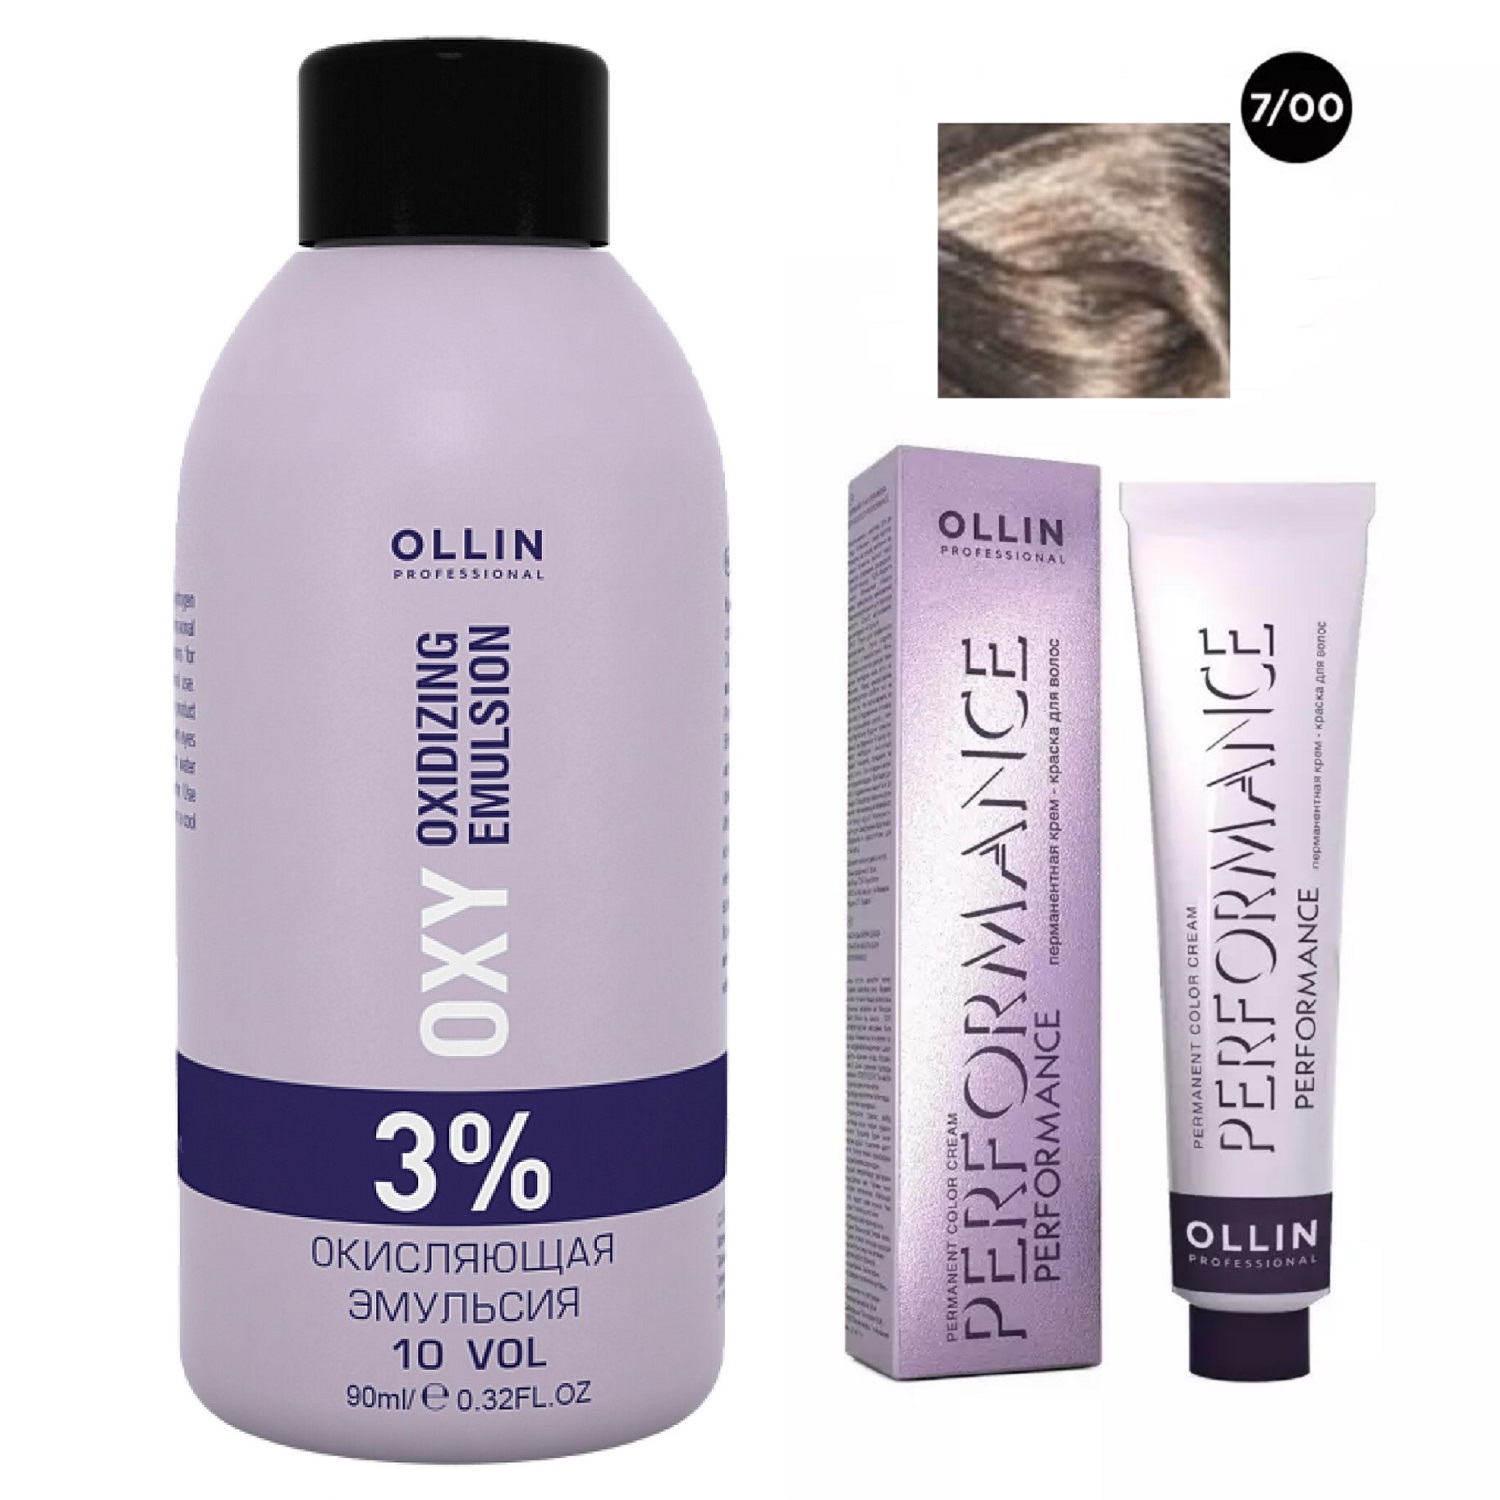 Ollin Professional Набор Перманентная крем-краска для волос Ollin Performance оттенок 7/00 русый глубокий 60 мл + Окисляющая эмульсия Oxy 3% 90 мл (Ollin Professional, Performance)